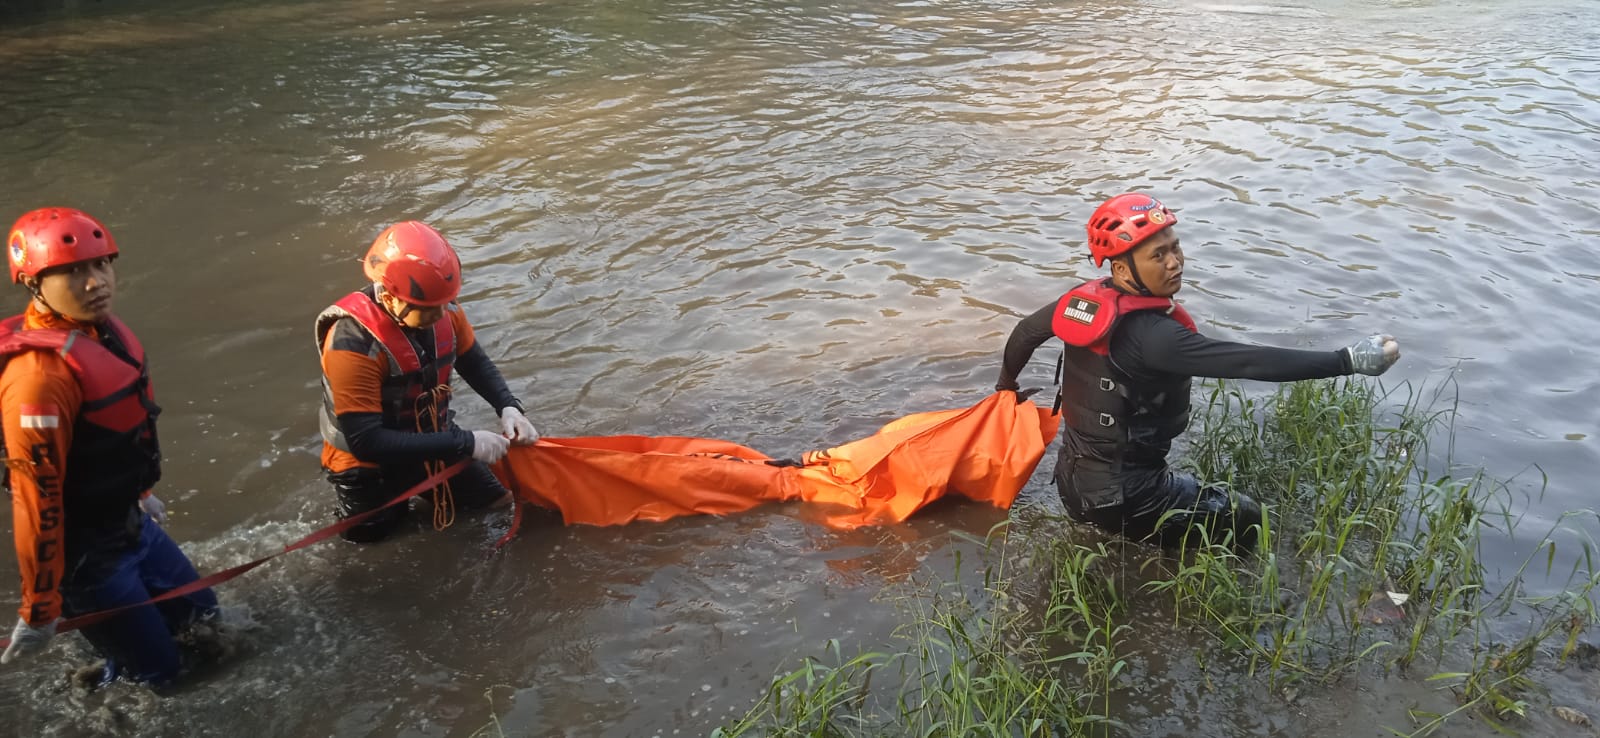 Satu dari dua bocah tenggelam di Sungai Brantas Malang ditemukan meninggal (Foto / Basarnas)